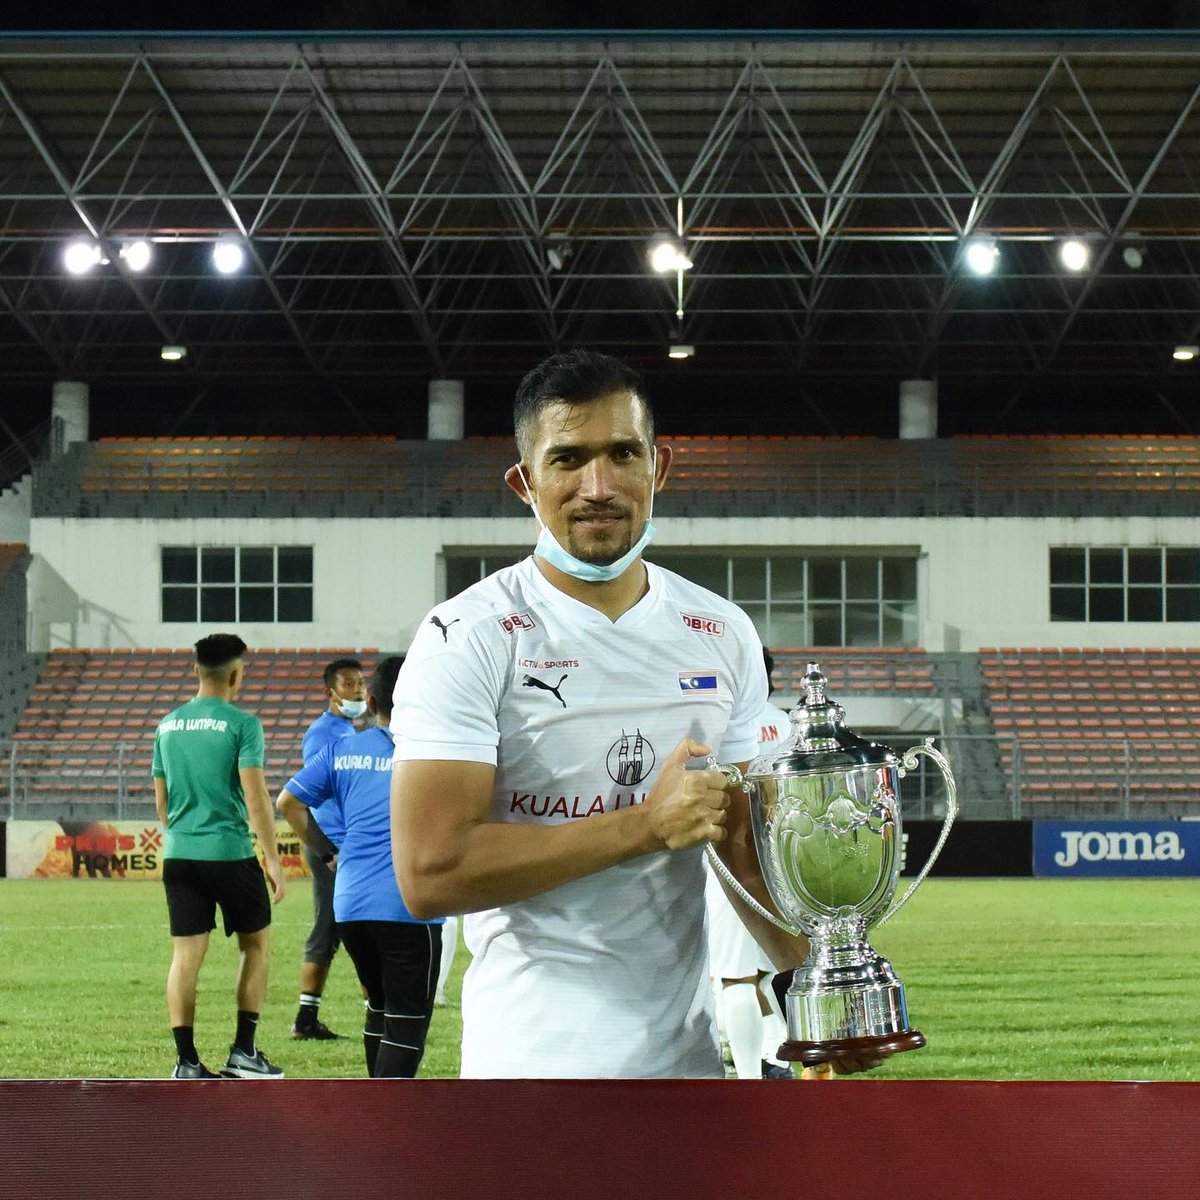 We are champions ! 🏆

Piala Prihatin Menteri Wilayah edisi pertama milik kita 💪🏻!

#sampaimatikualalumpur #thederby